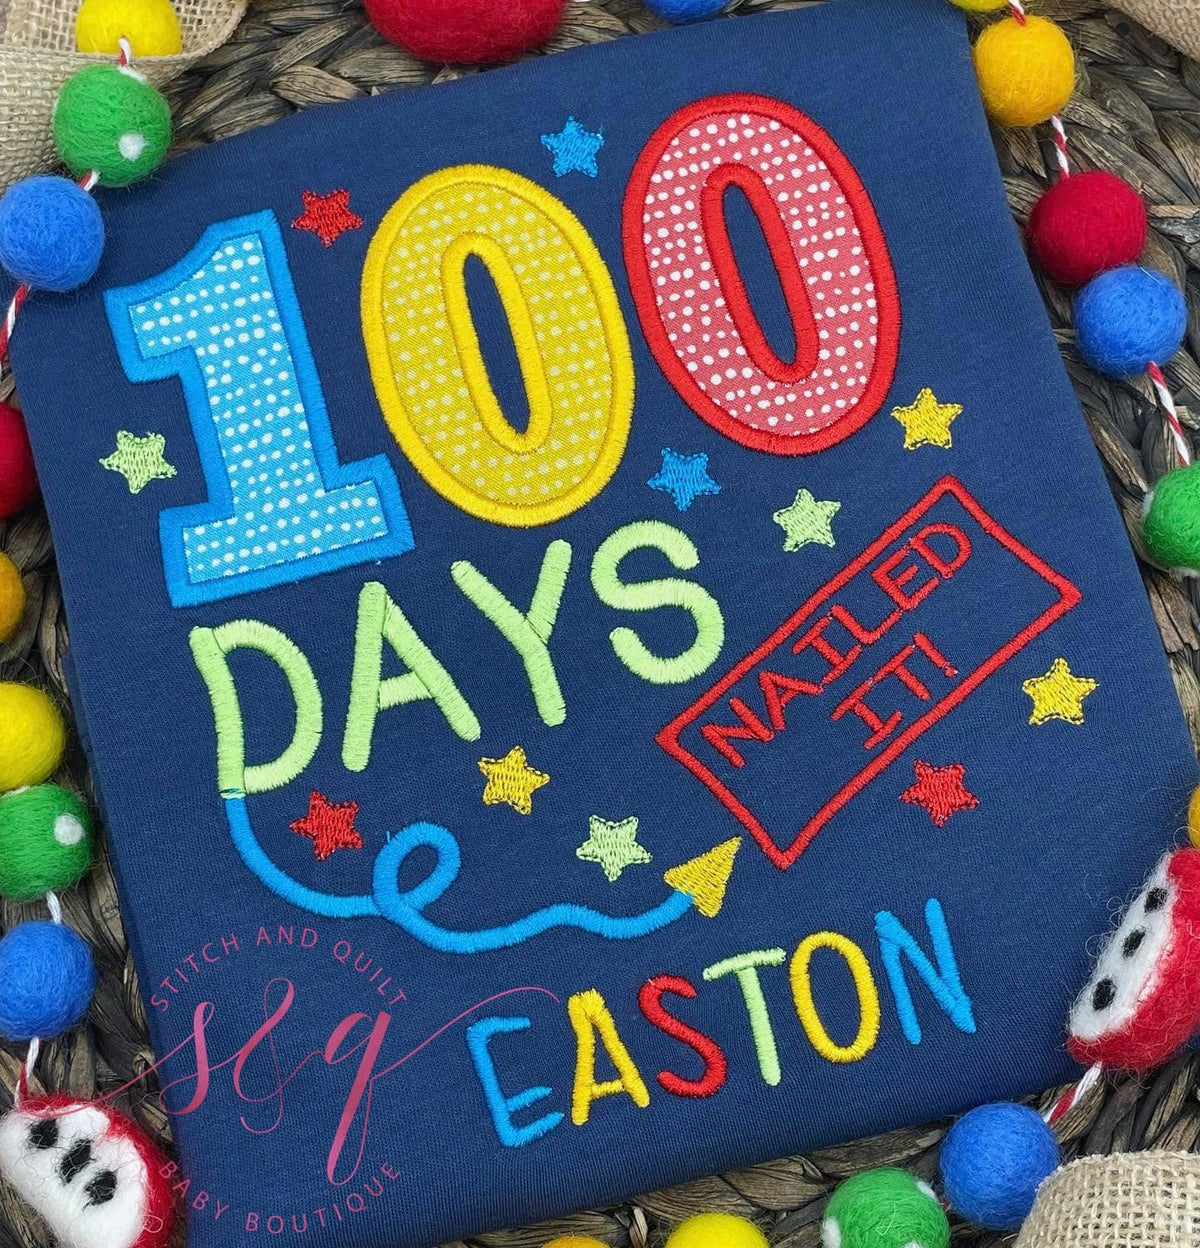 100 days of school shirt boy,  100 days of school shirt, 100 Days Nailed it